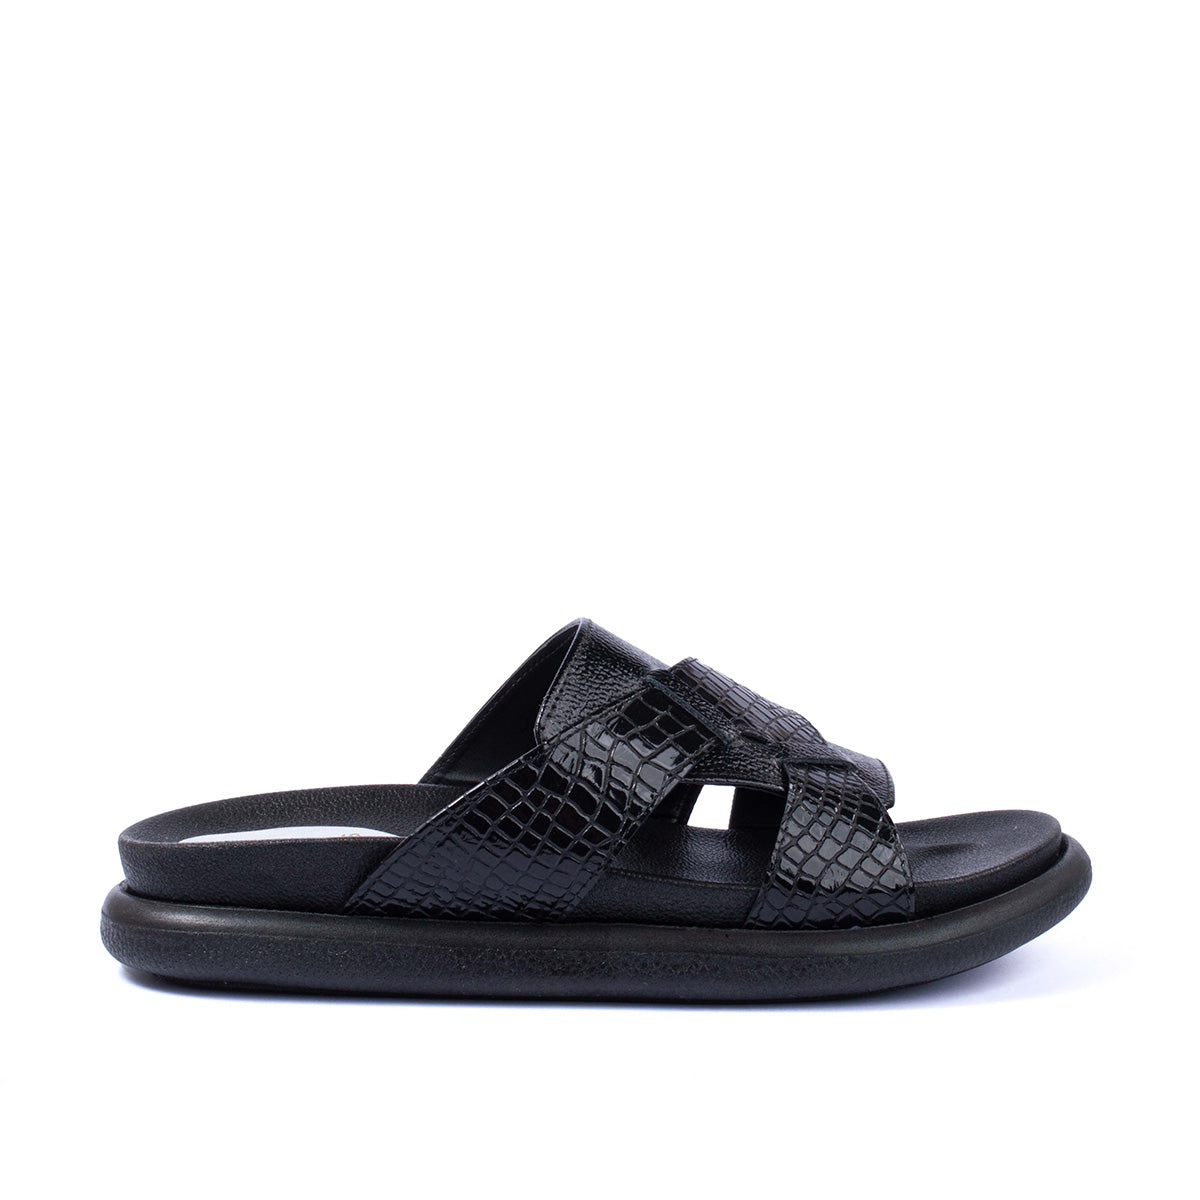 Sandalias planas en cuero color negro con textura tipo croco 104073